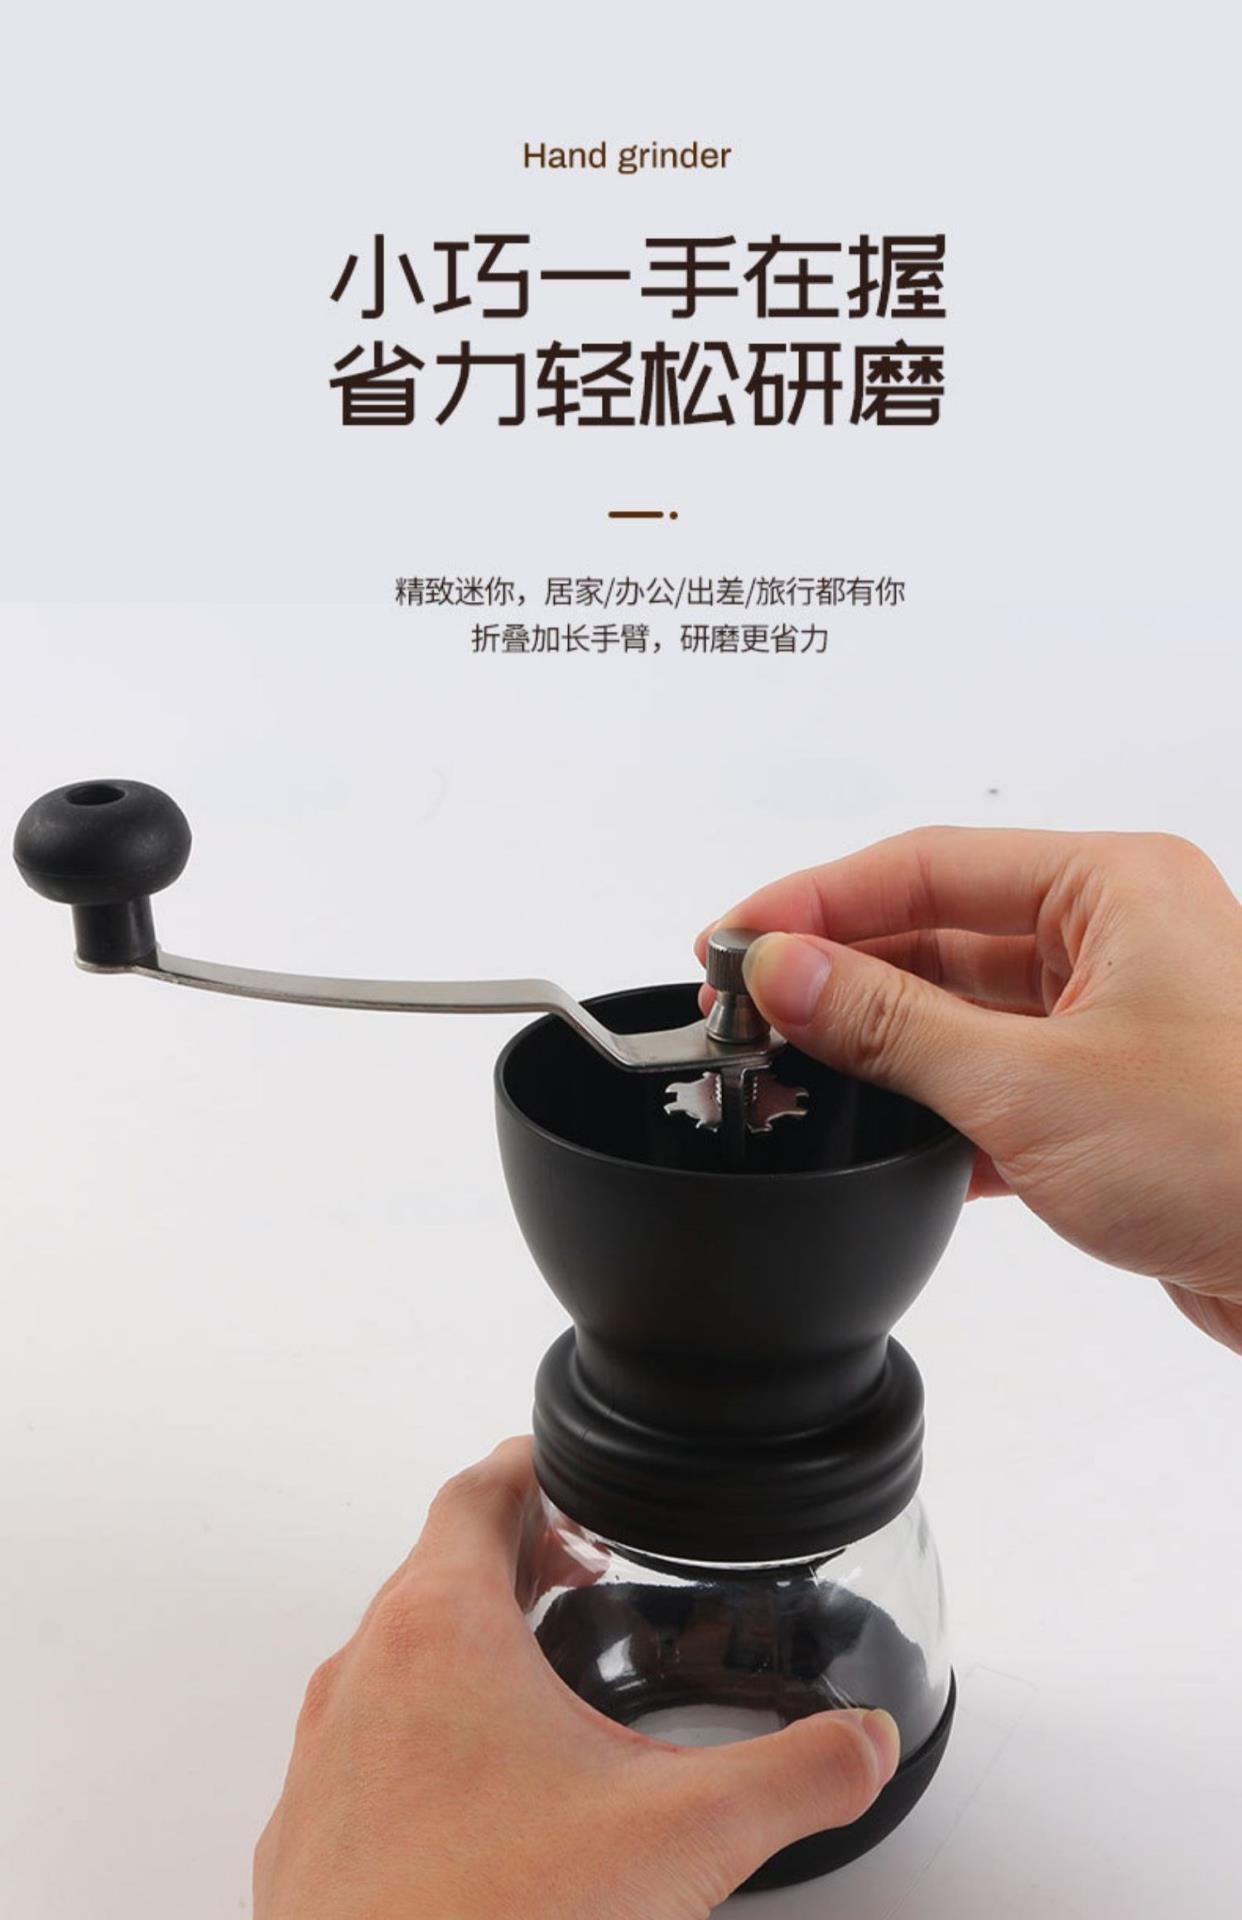 Máy xay cà phê bằng tay Đồ gia dụng bằng gốm Máy pha cà phê bằng tay nhỏ Máy xay hạt cà phê Máy xay hạt cà phê Giá rẻ - Cà phê